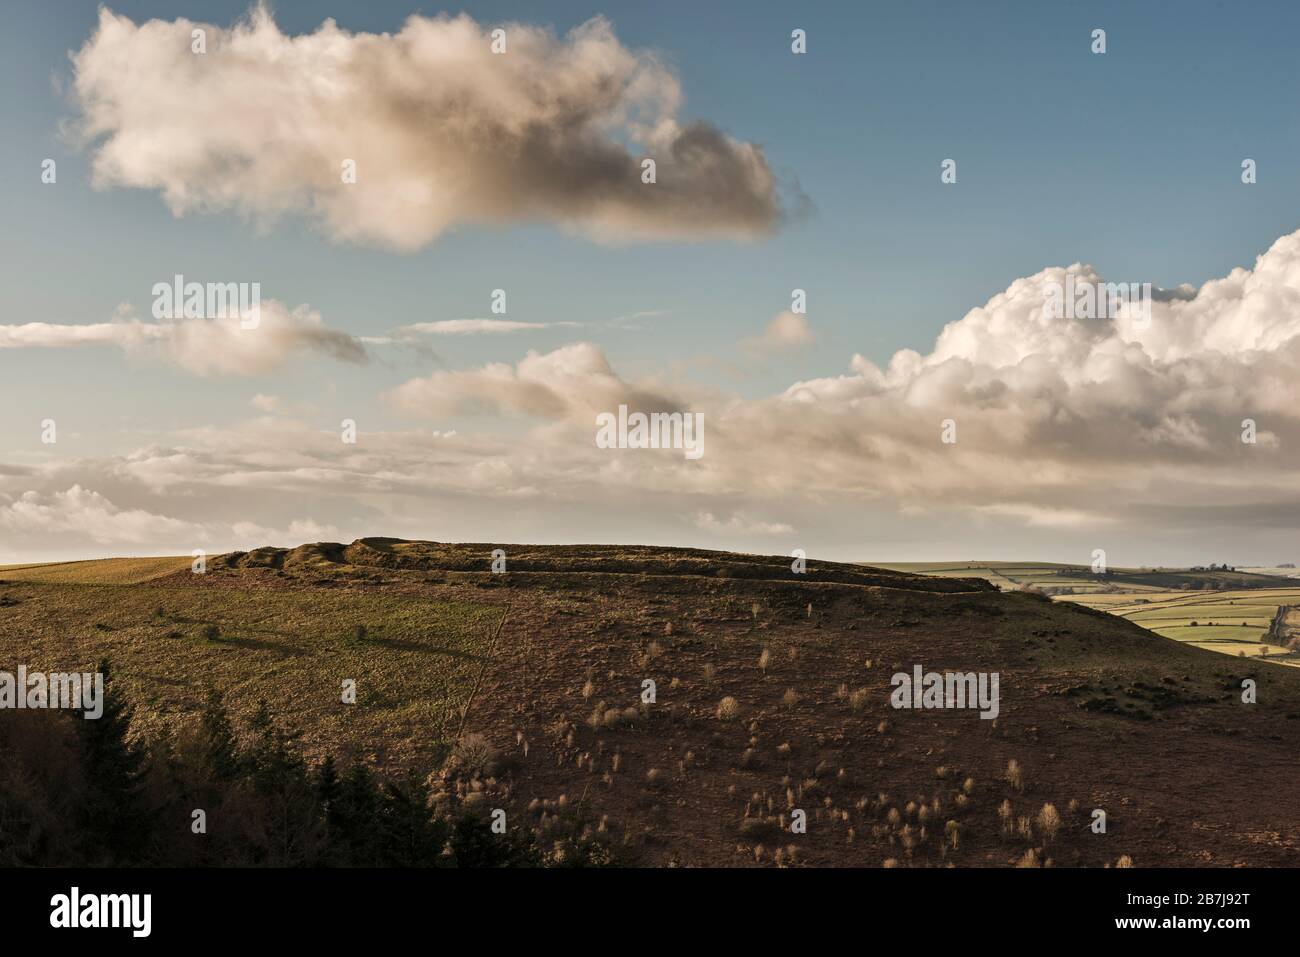 El fuerte de la colina de la Edad de Hierro de Caer Caradoc se encuentra sobre el pueblo de Chapel Lawn, cerca de Clun en el sur de Shropshire, Reino Unido, que data aproximadamente del 500 AC Foto de stock